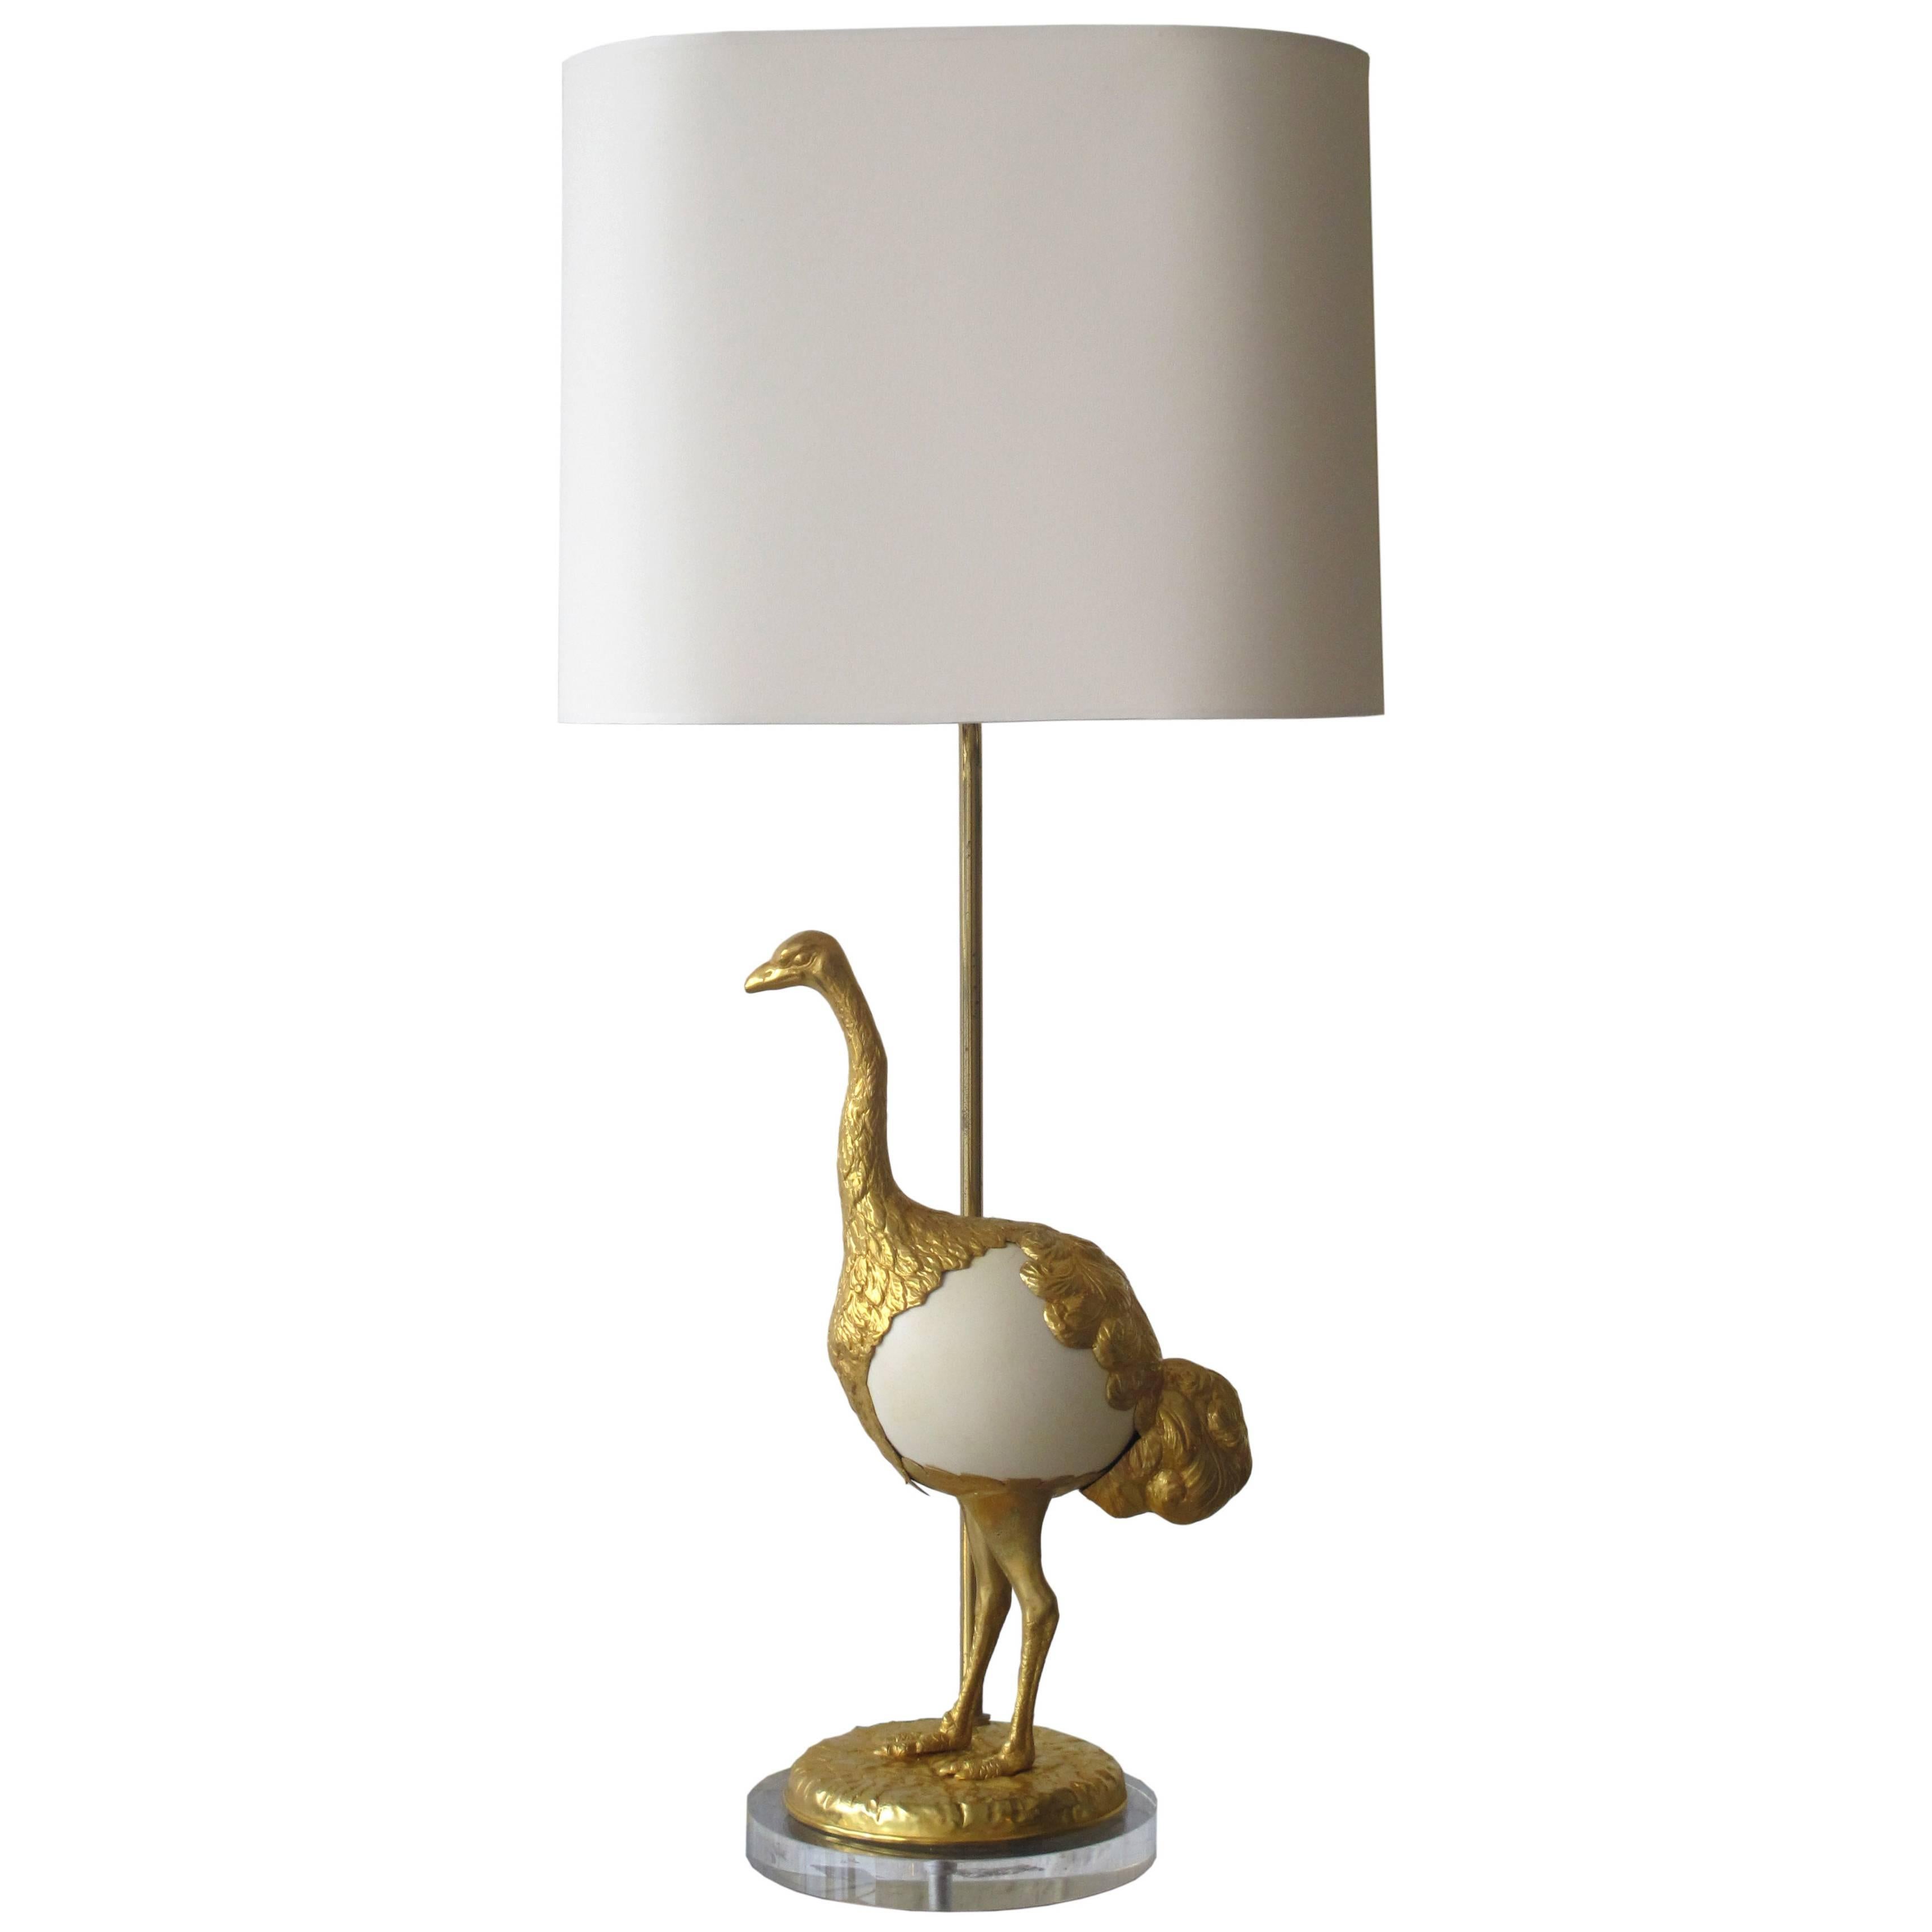 ‘Struzzi’ Table Lamp by Gabriella Crespi For Sale